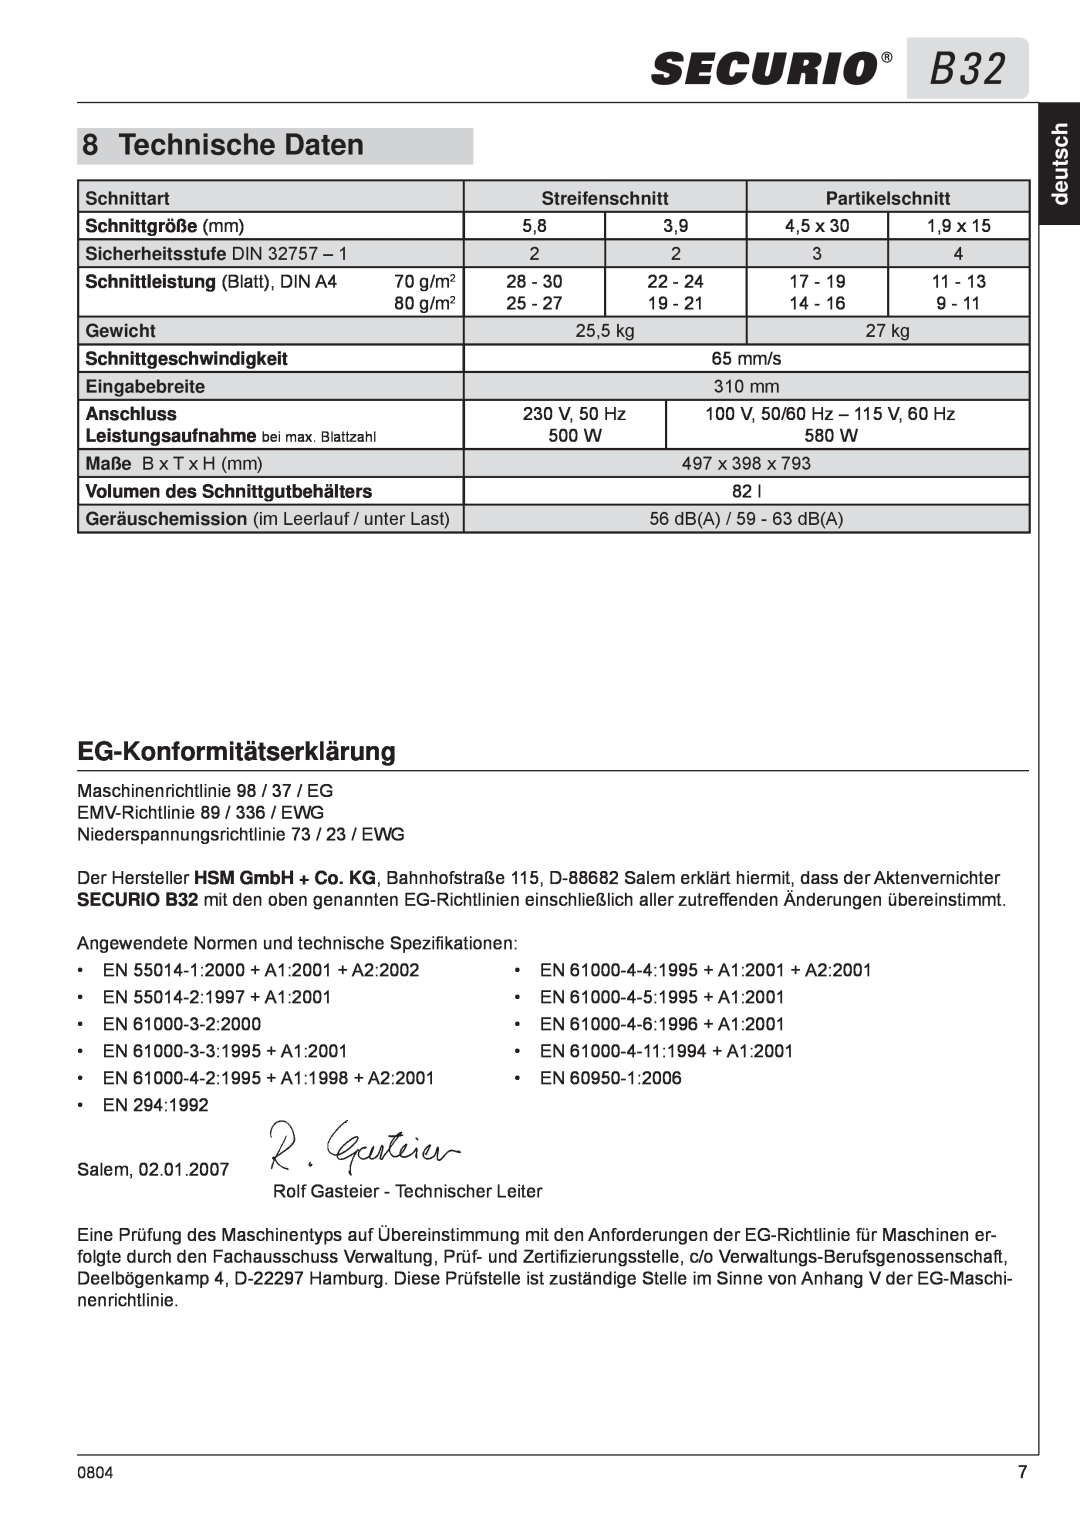 HSM B32 manual Technische Daten, EG-Konformitätserklärung, deutsch 